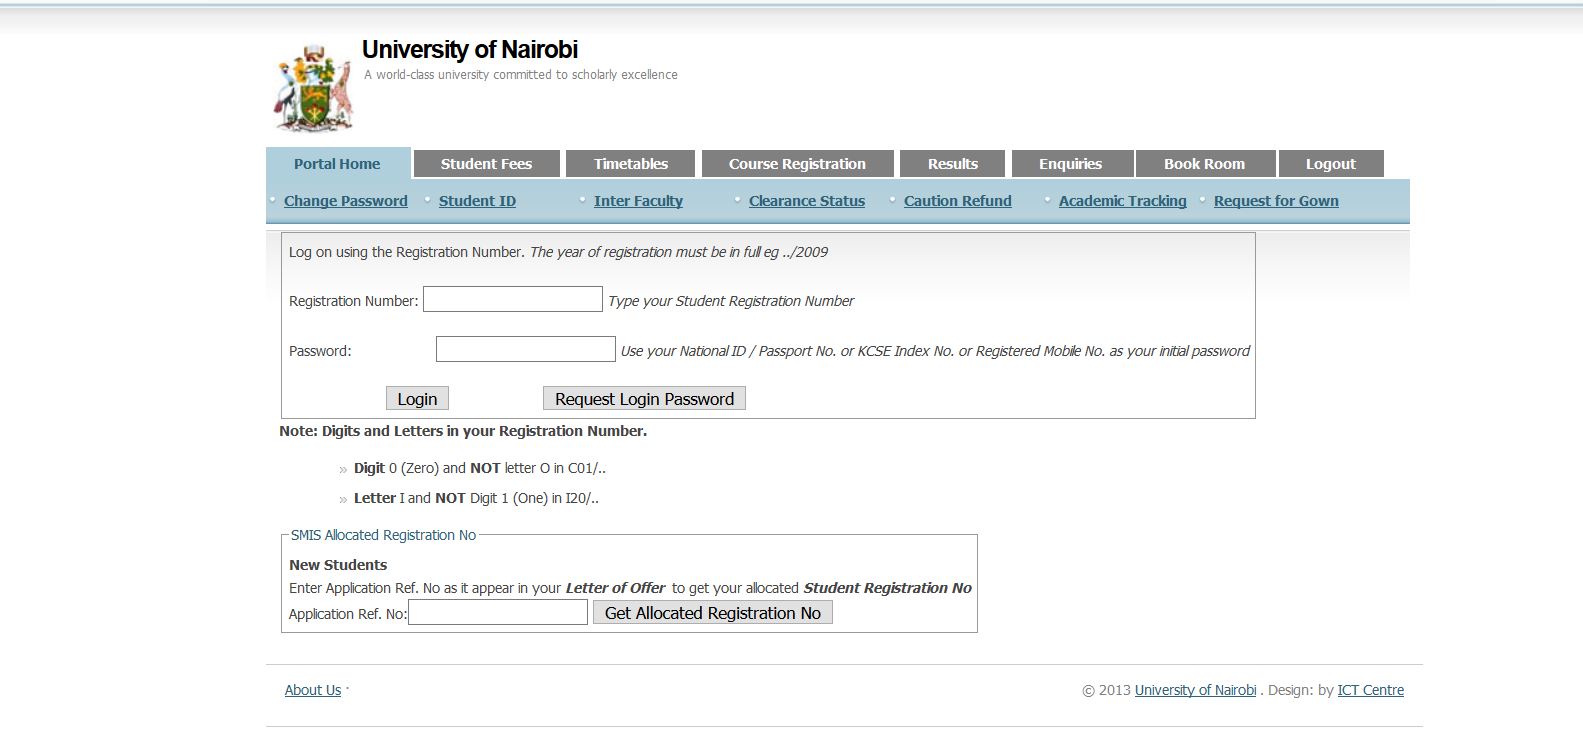 application letter for university of nairobi